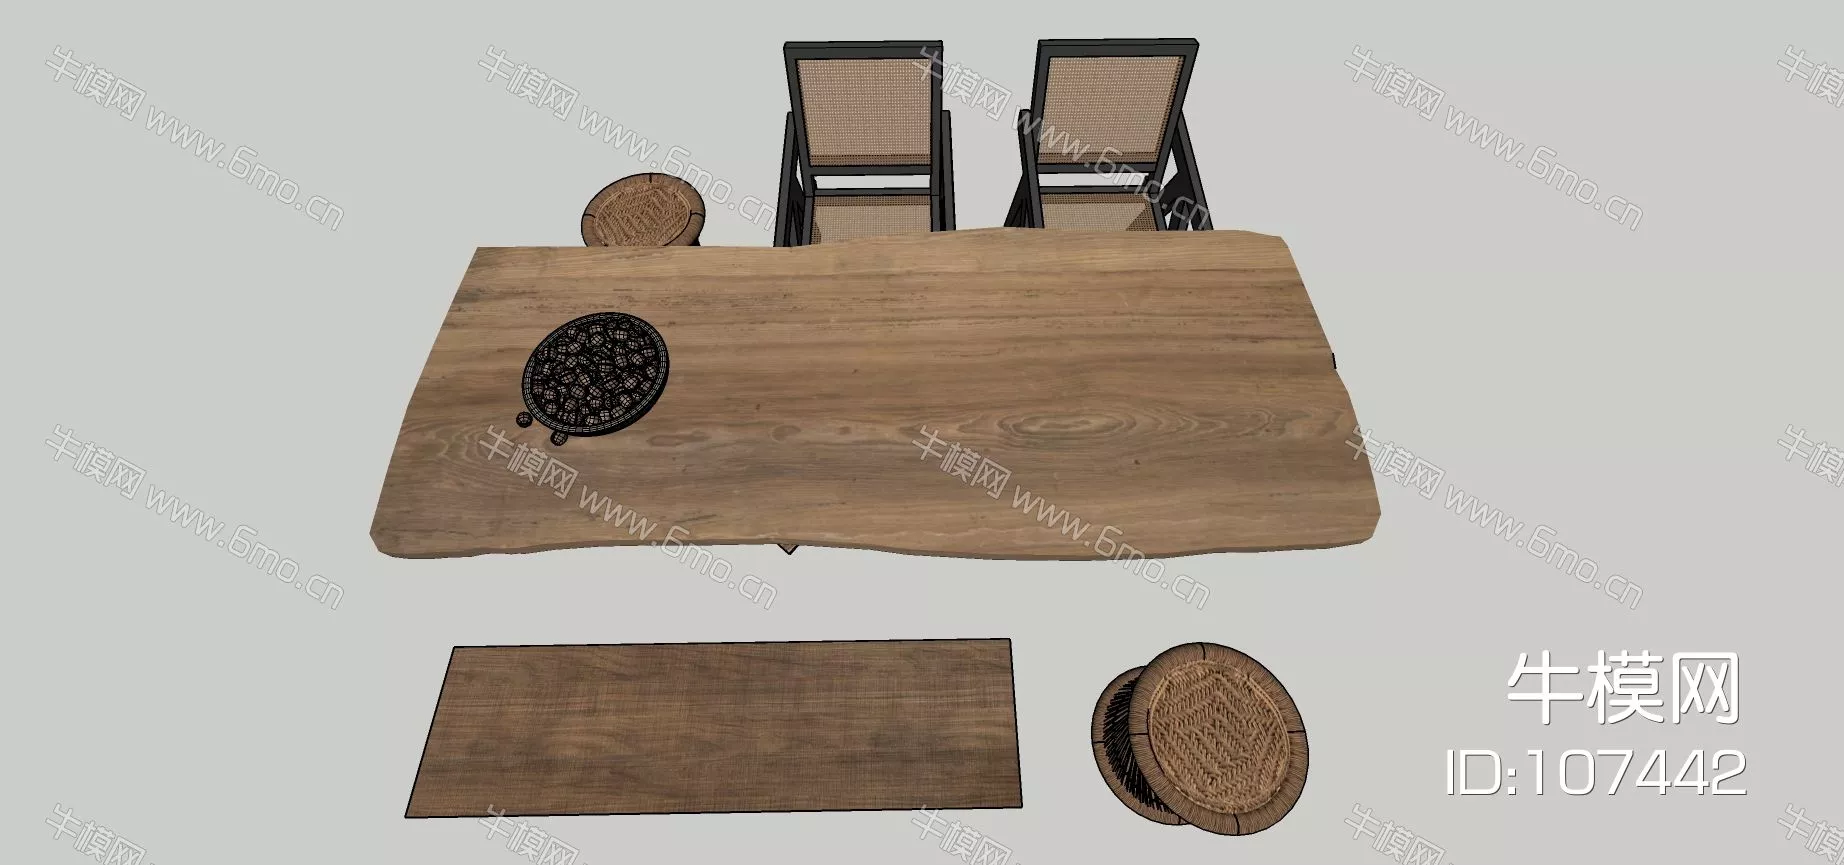 MODERN DINING TABLE SET - SKETCHUP 3D MODEL - ENSCAPE - 107442